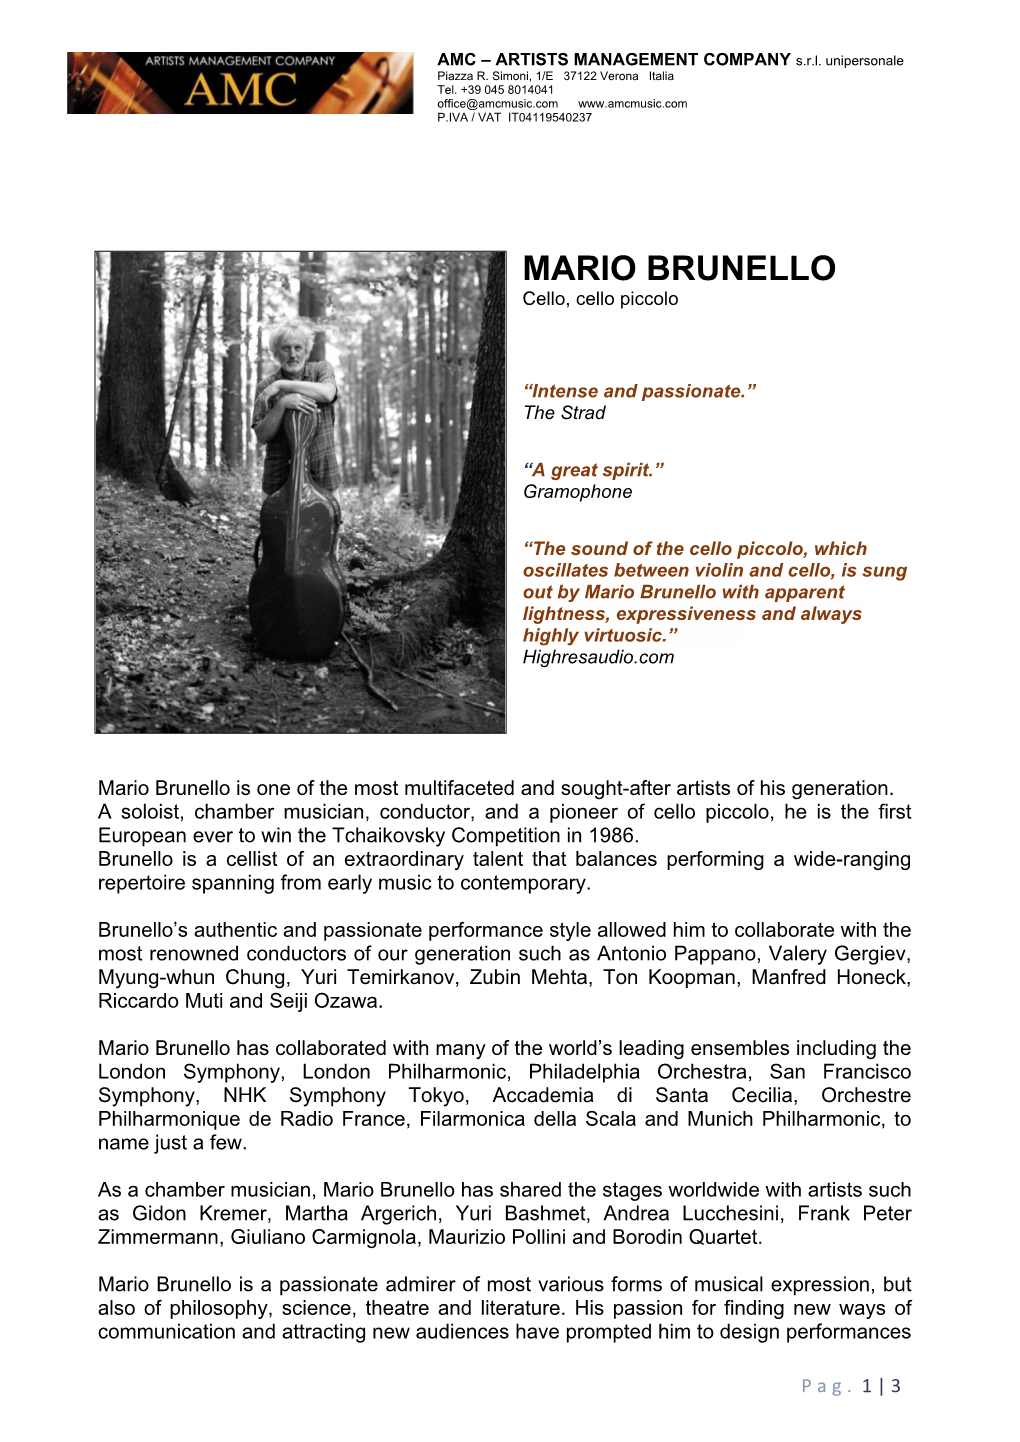 MARIO BRUNELLO Cello, Cello Piccolo